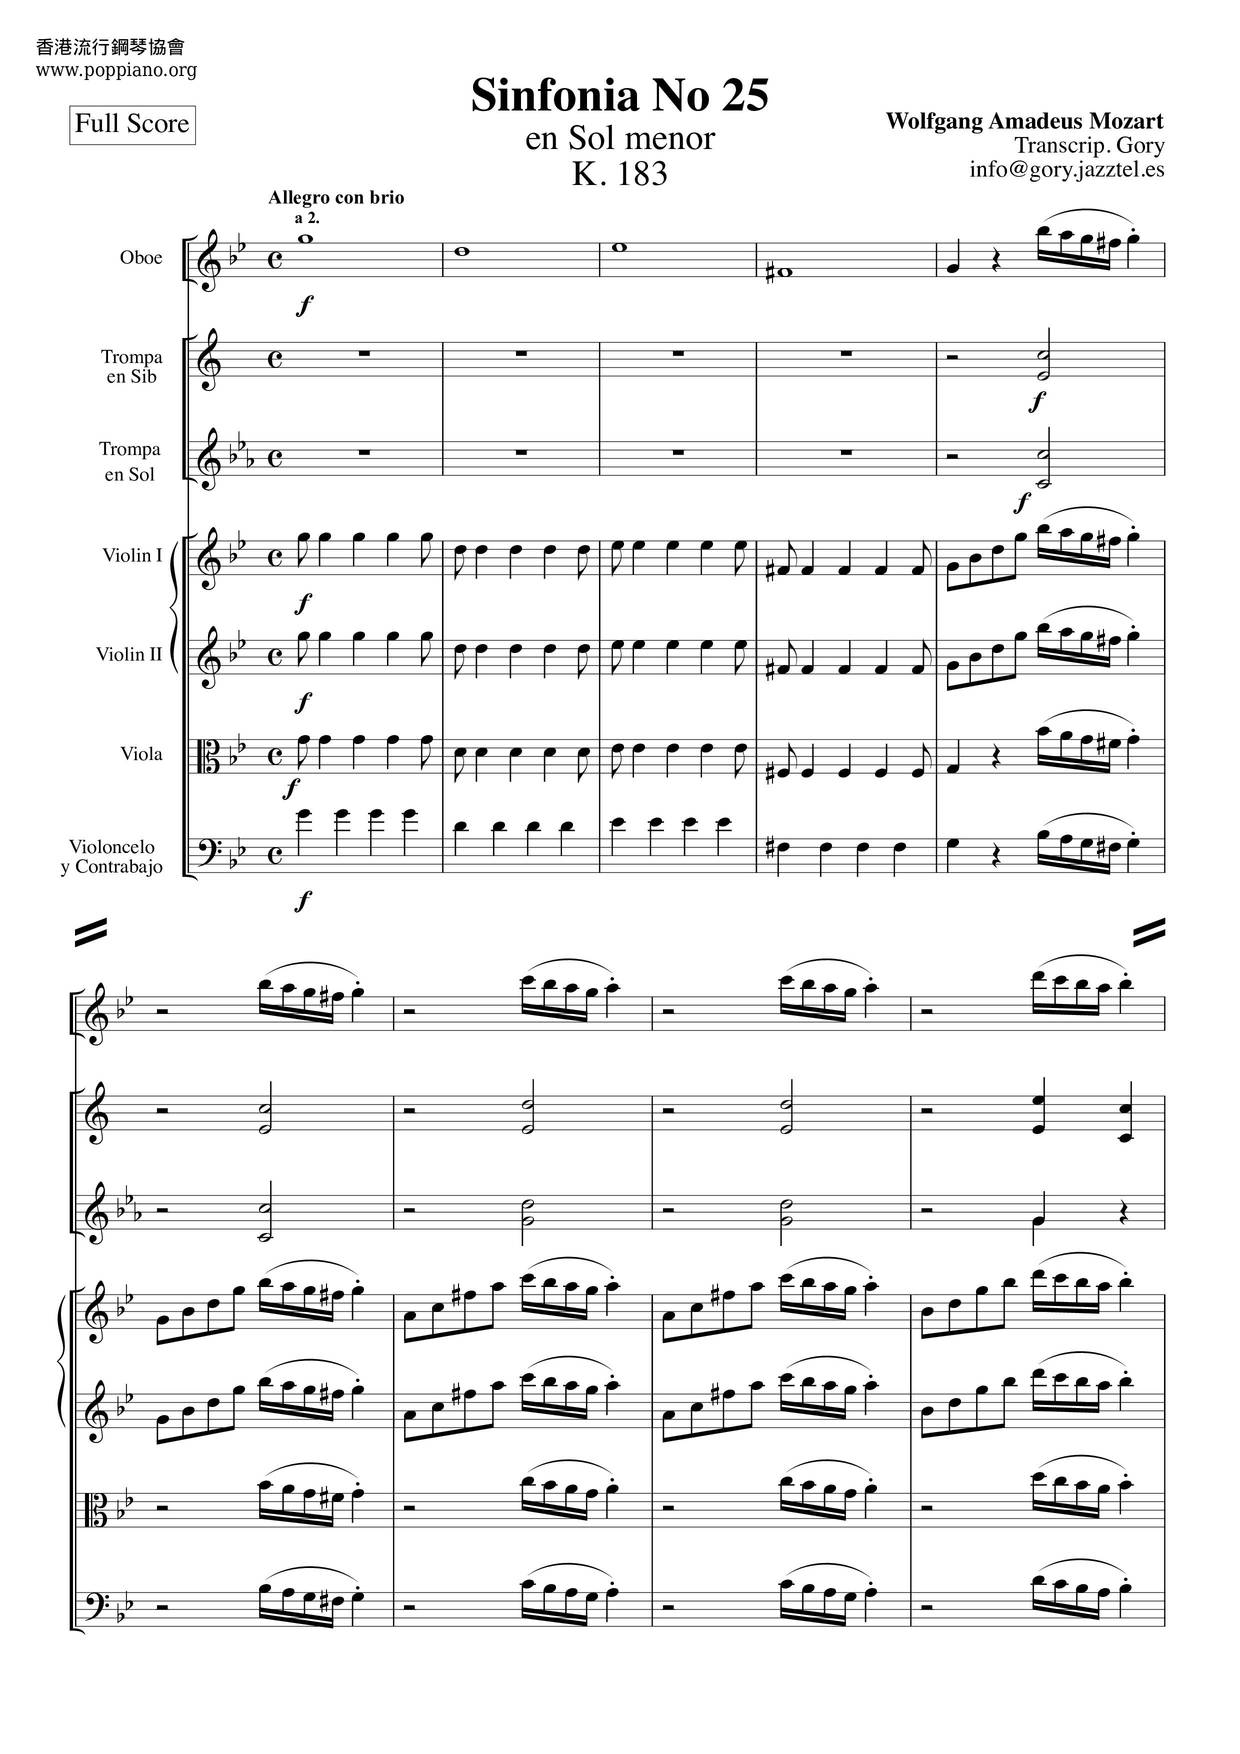 Symphony No. 25 in G minor, K.183: 1. Allegro con brio Score